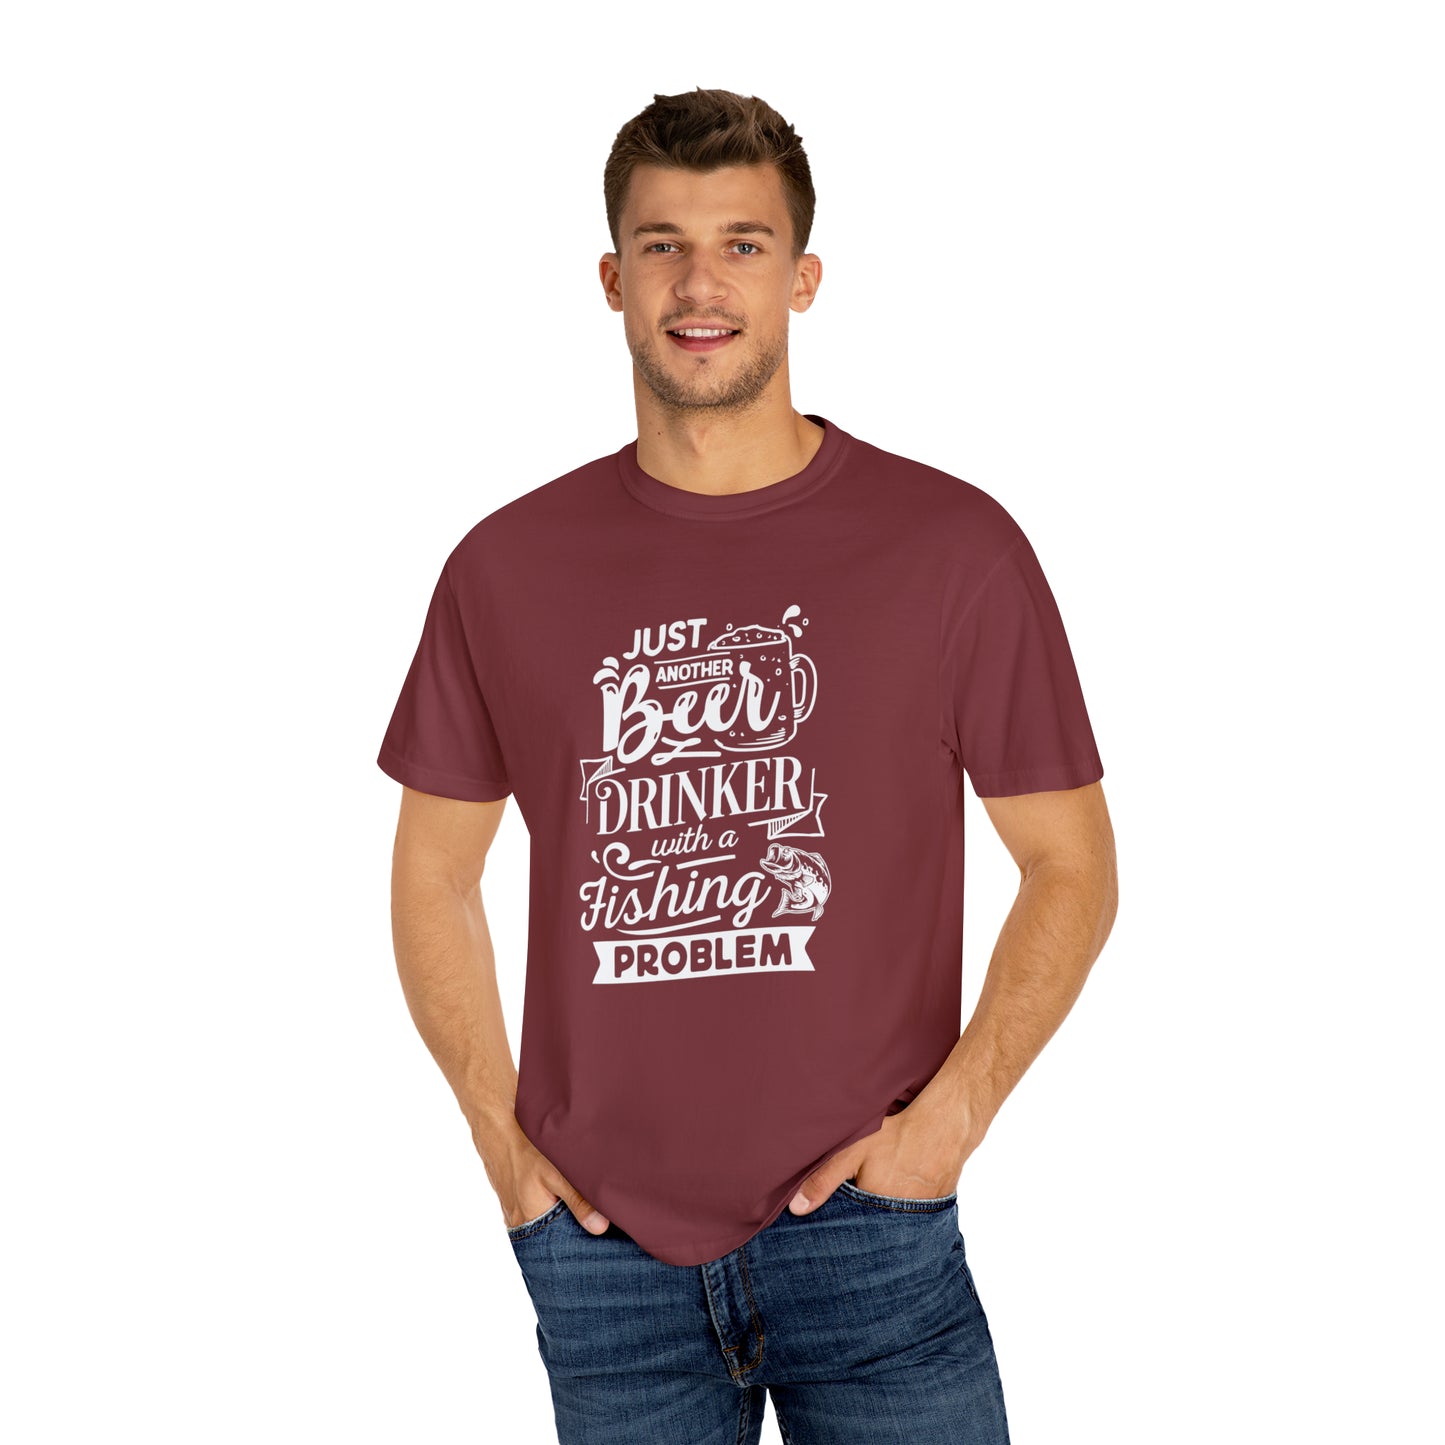 Camiseta para entusiastas de la cerveza Fishing Addict: ¡Abraza tu pasión por ambos!